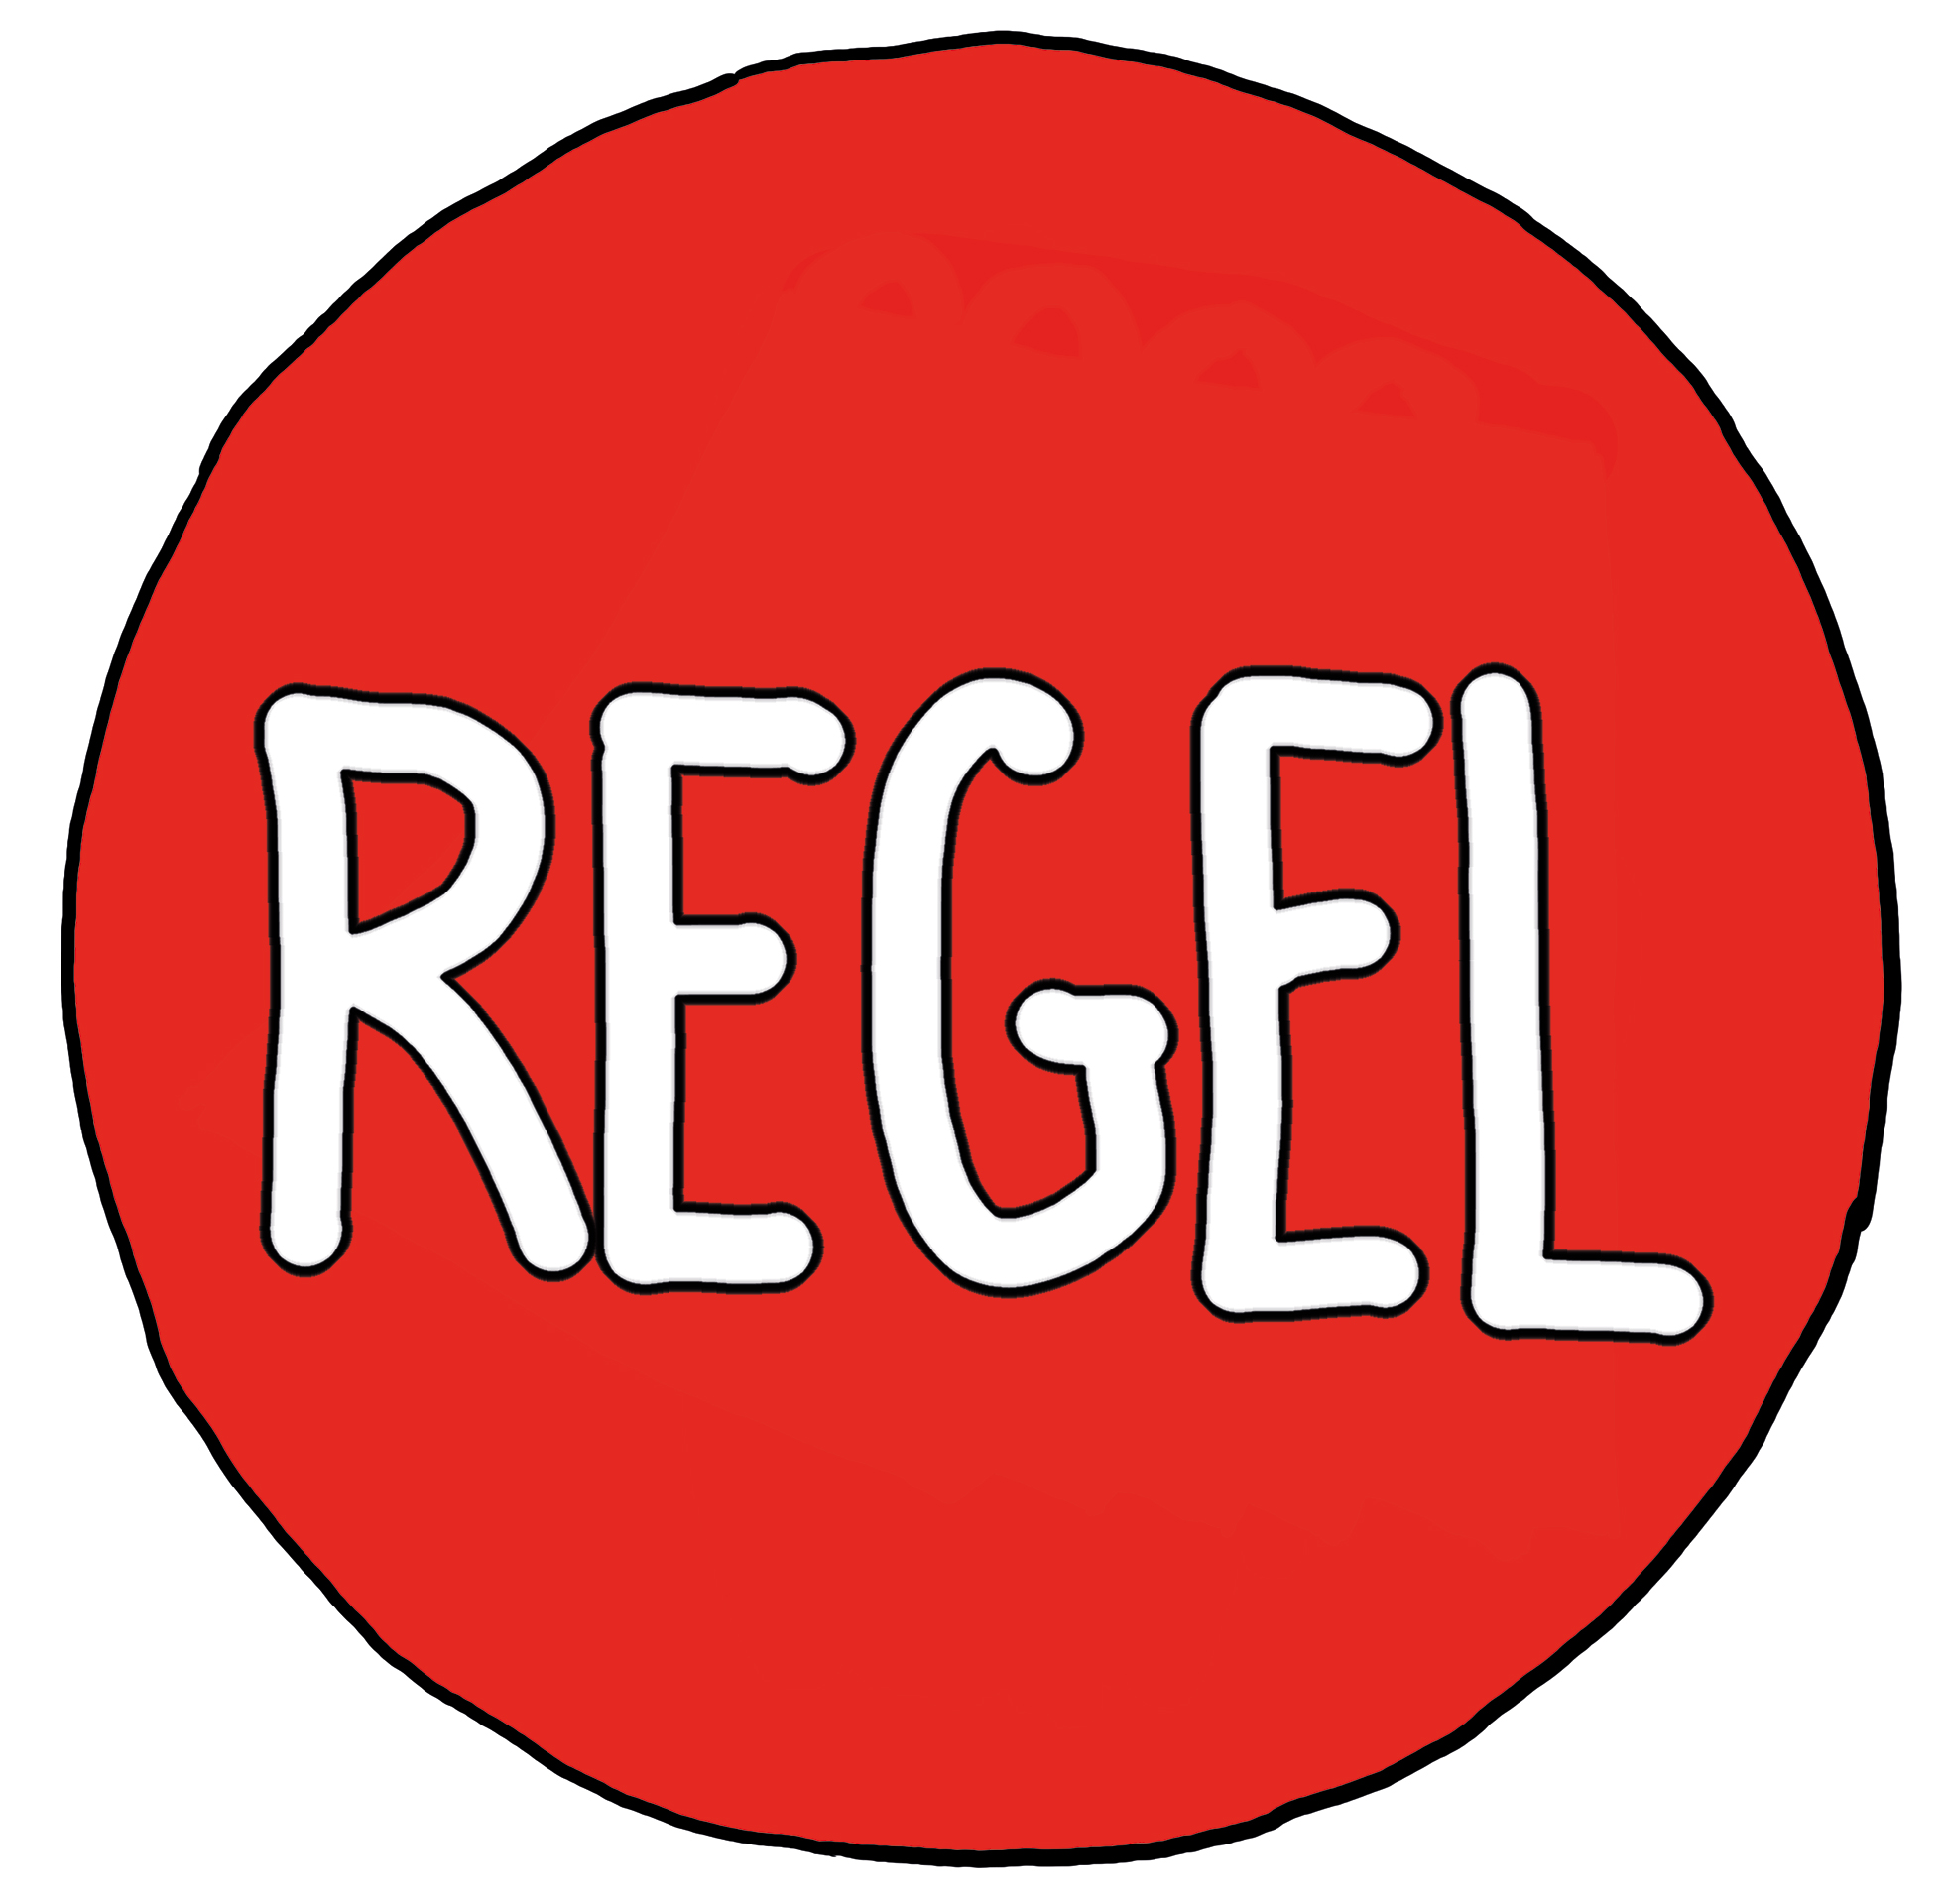 Das Wort "Regel" auf einem roten Kreis - Symbol für Regel